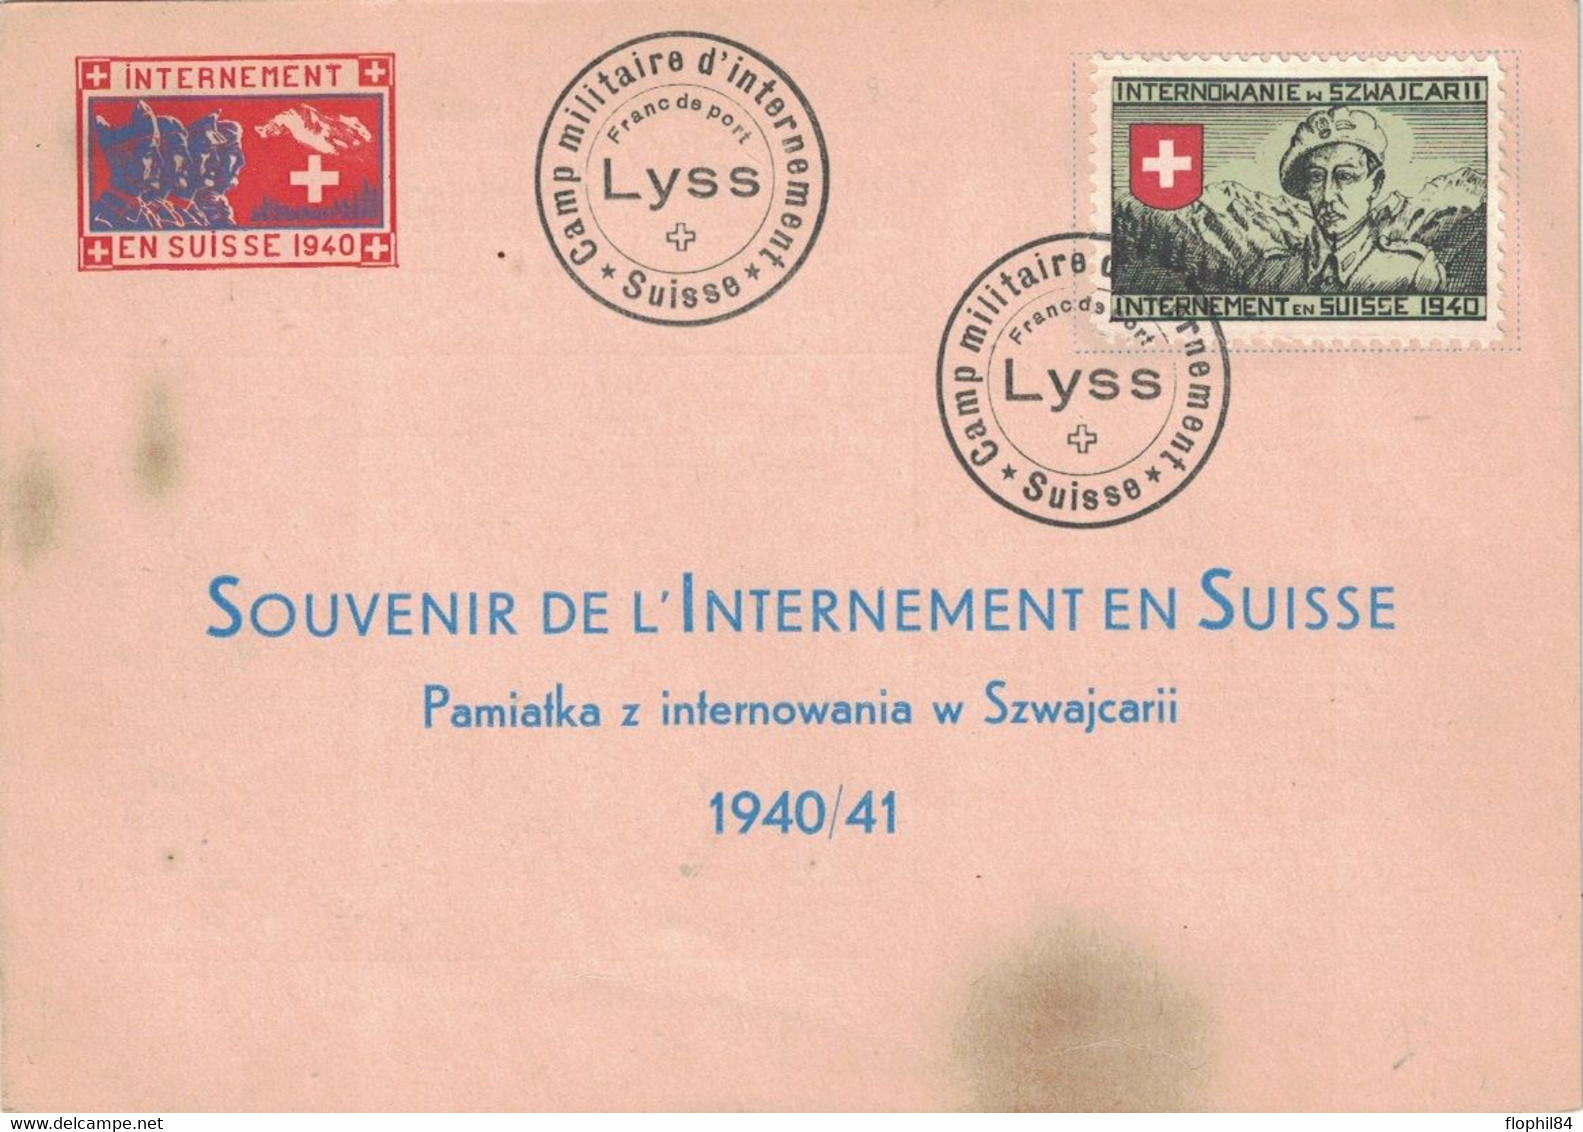 INTERNEMENT MILITAIRE EN SUISSE EN 1940 - ENVELOPPE AVEC VIGNETTE - CAMP DE LYSS. - Documenten